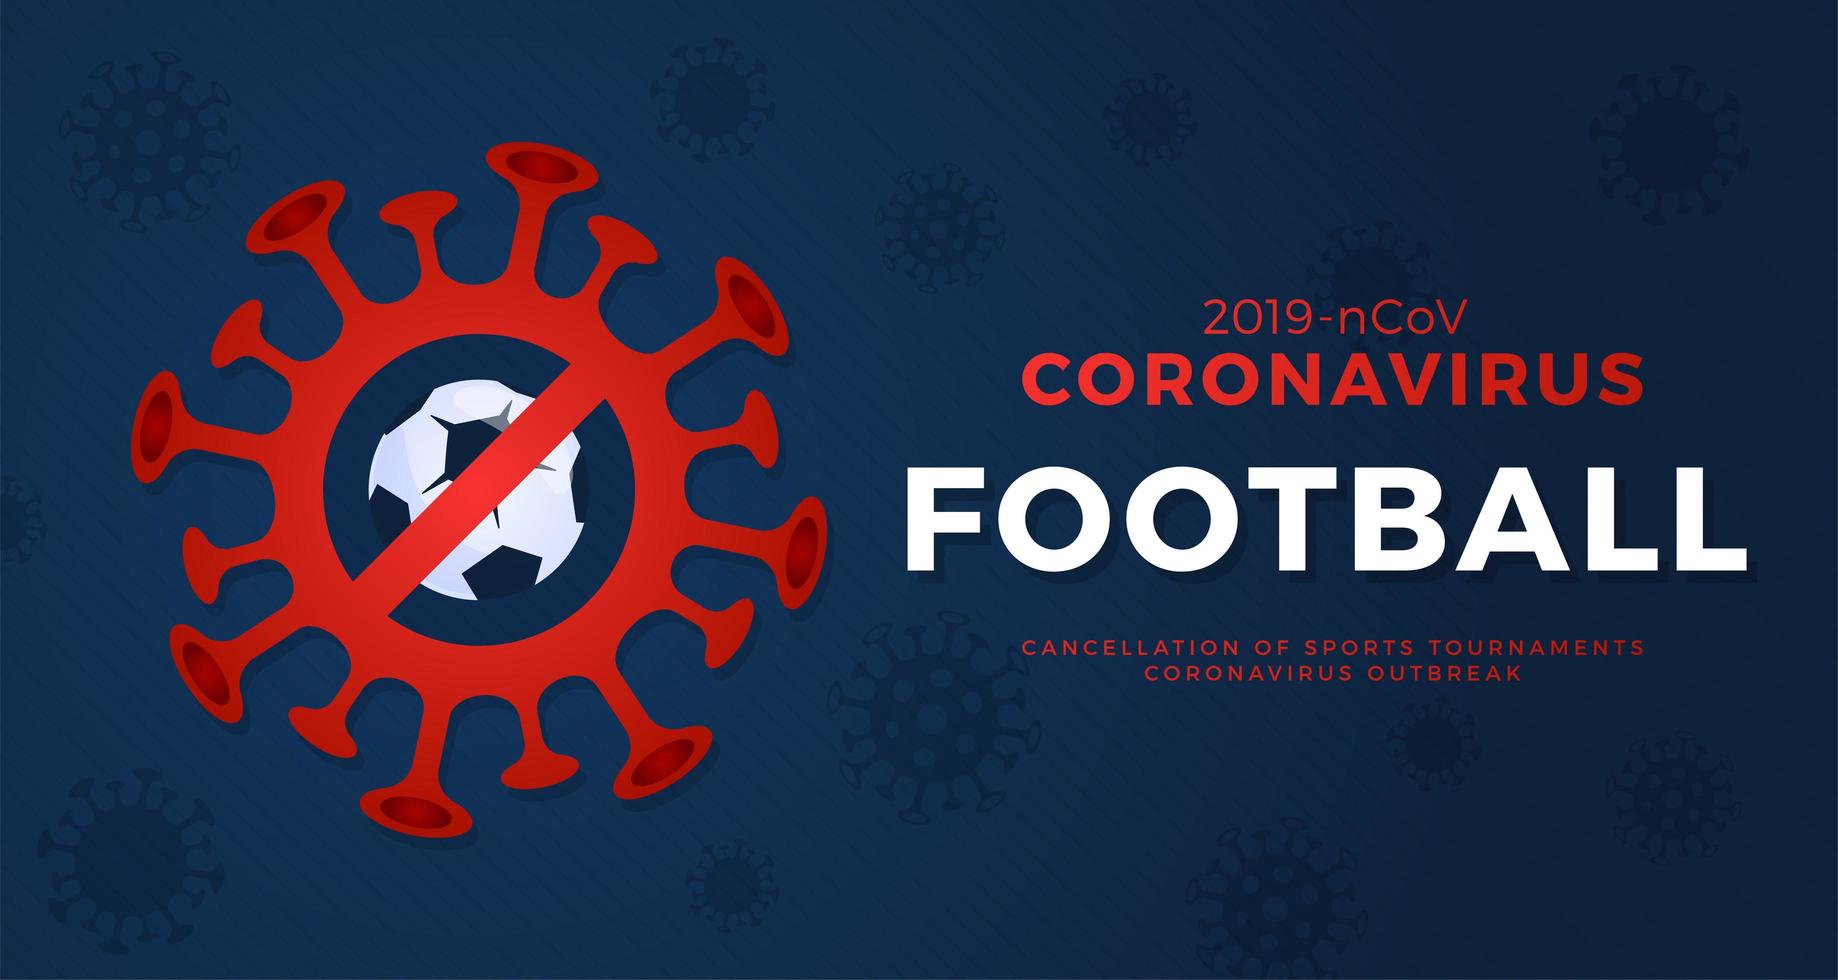 fotboll vektor banner försiktighet coronavirus. stoppa 2019-ncov-utbrottet. koronavirus fara och folkhälsorisk sjukdom och influensautbrott. avbokning av sportevenemang och matchkoncept